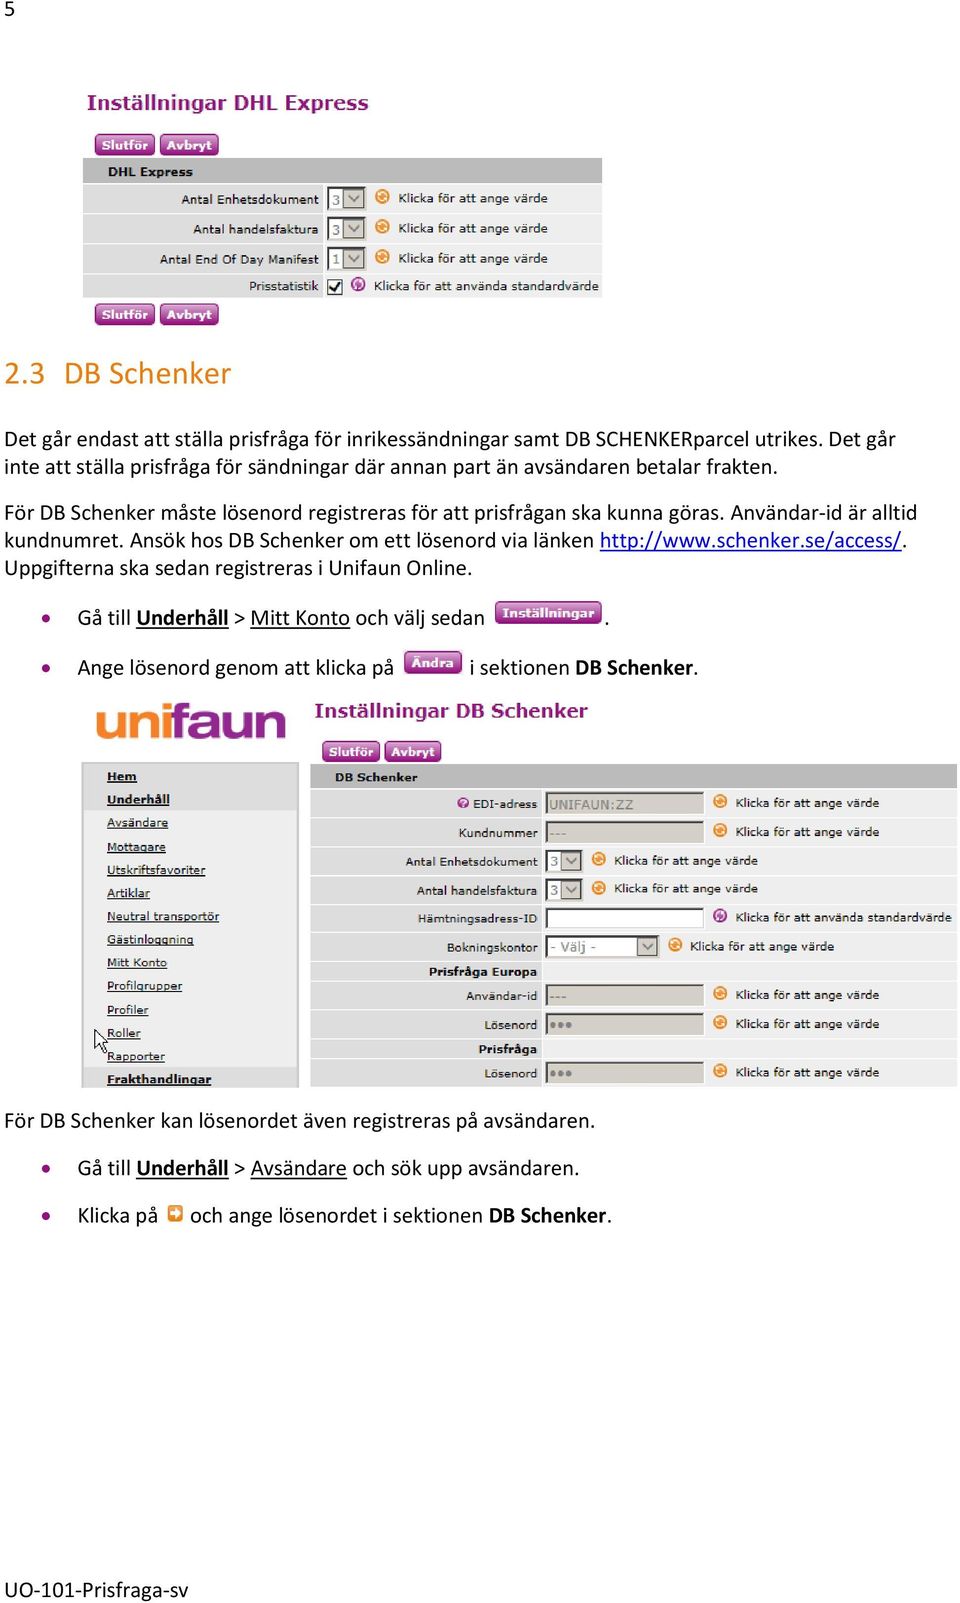 Användar-id är alltid kundnumret. Ansök hos DB Schenker om ett lösenord via länken http://www.schenker.se/access/. Uppgifterna ska sedan registreras i Unifaun Online.